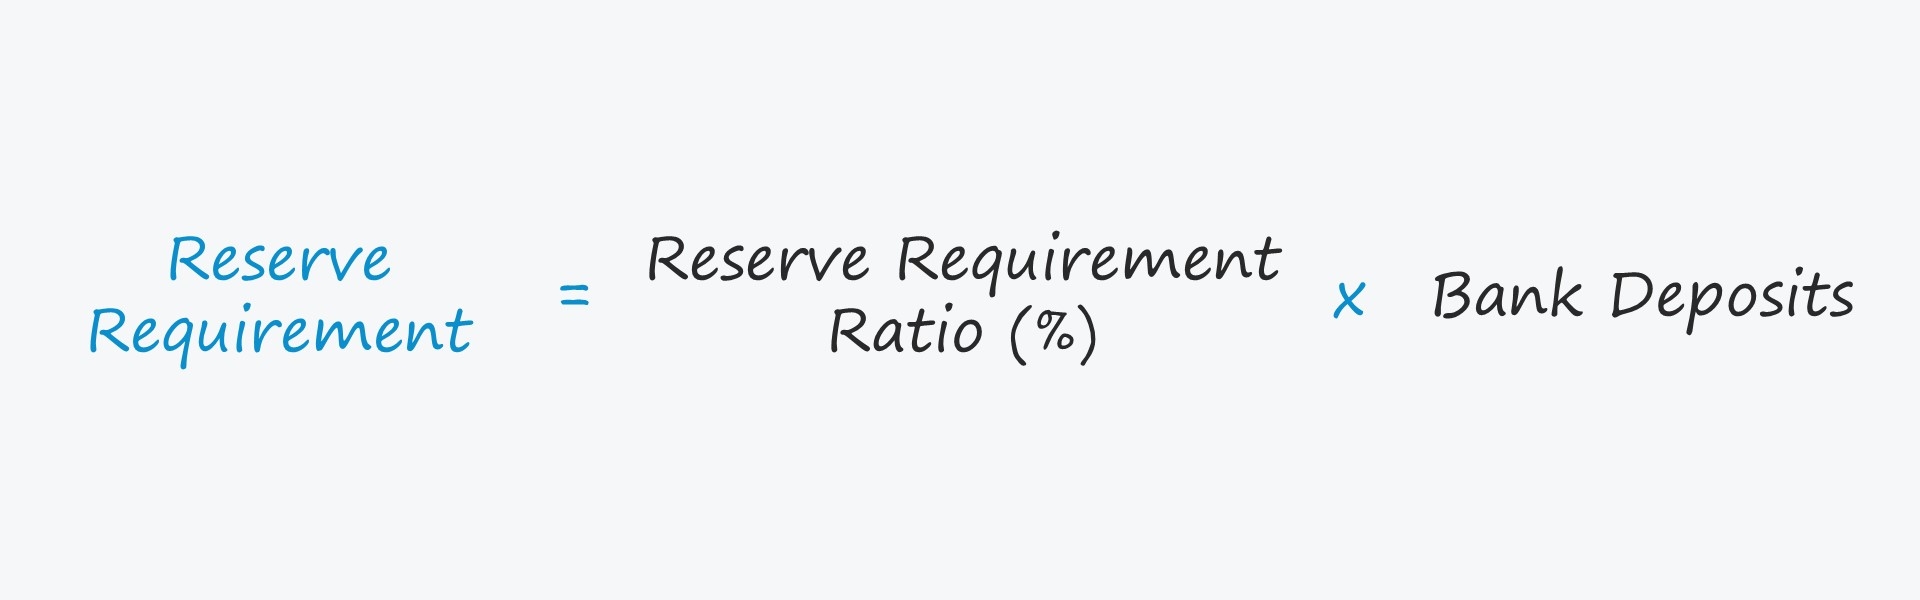 Requisitos de reserva | Definición económica + ejemplos